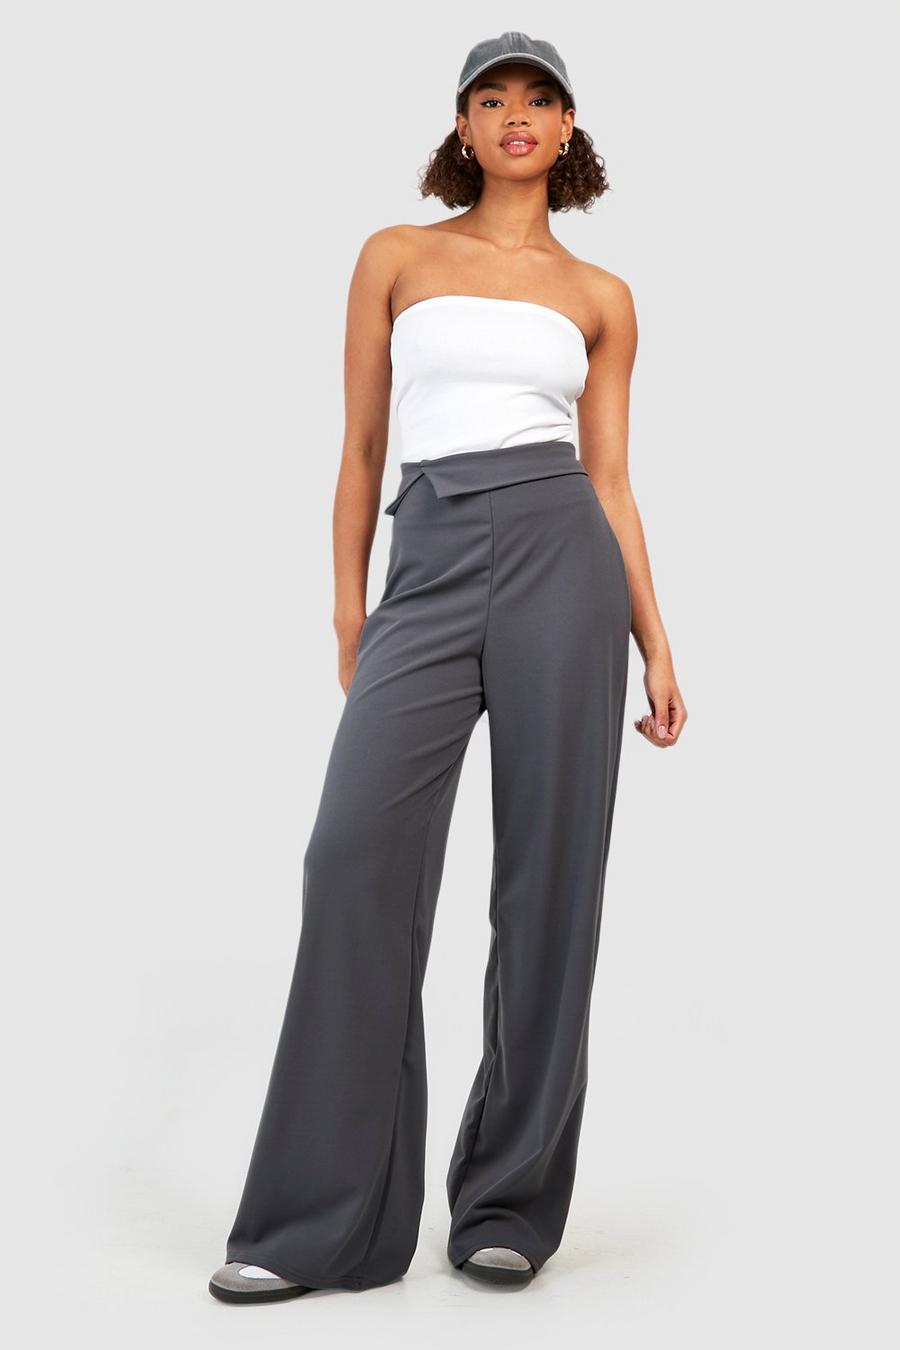 Tall - Pantalon asymétrique large replié, Charcoal gris